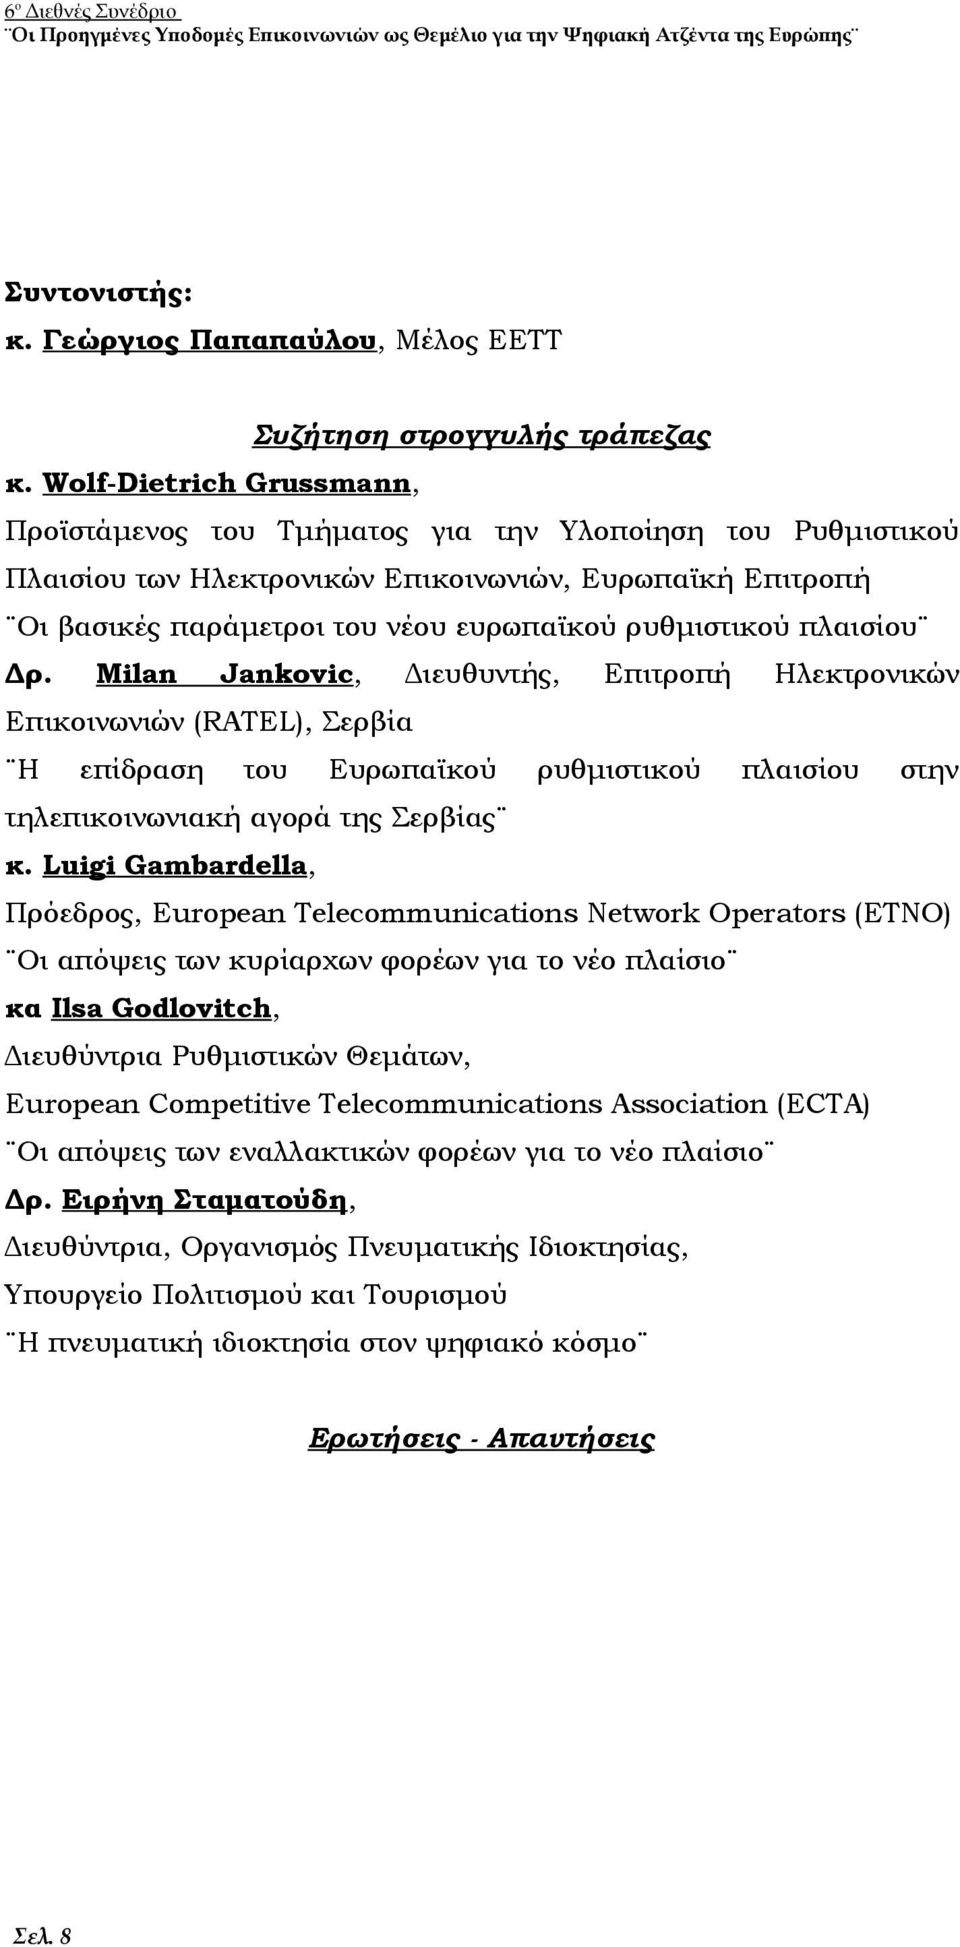 πλαισίου Δρ. Milan Jankovic, Διευθυντής, Επιτροπή Ηλεκτρονικών Επικοινωνιών (RATEL), Σερβία Η επίδραση του Ευρωπαϊκού ρυθμιστικού πλαισίου στην τηλεπικοινωνιακή αγορά της Σερβίας κ.